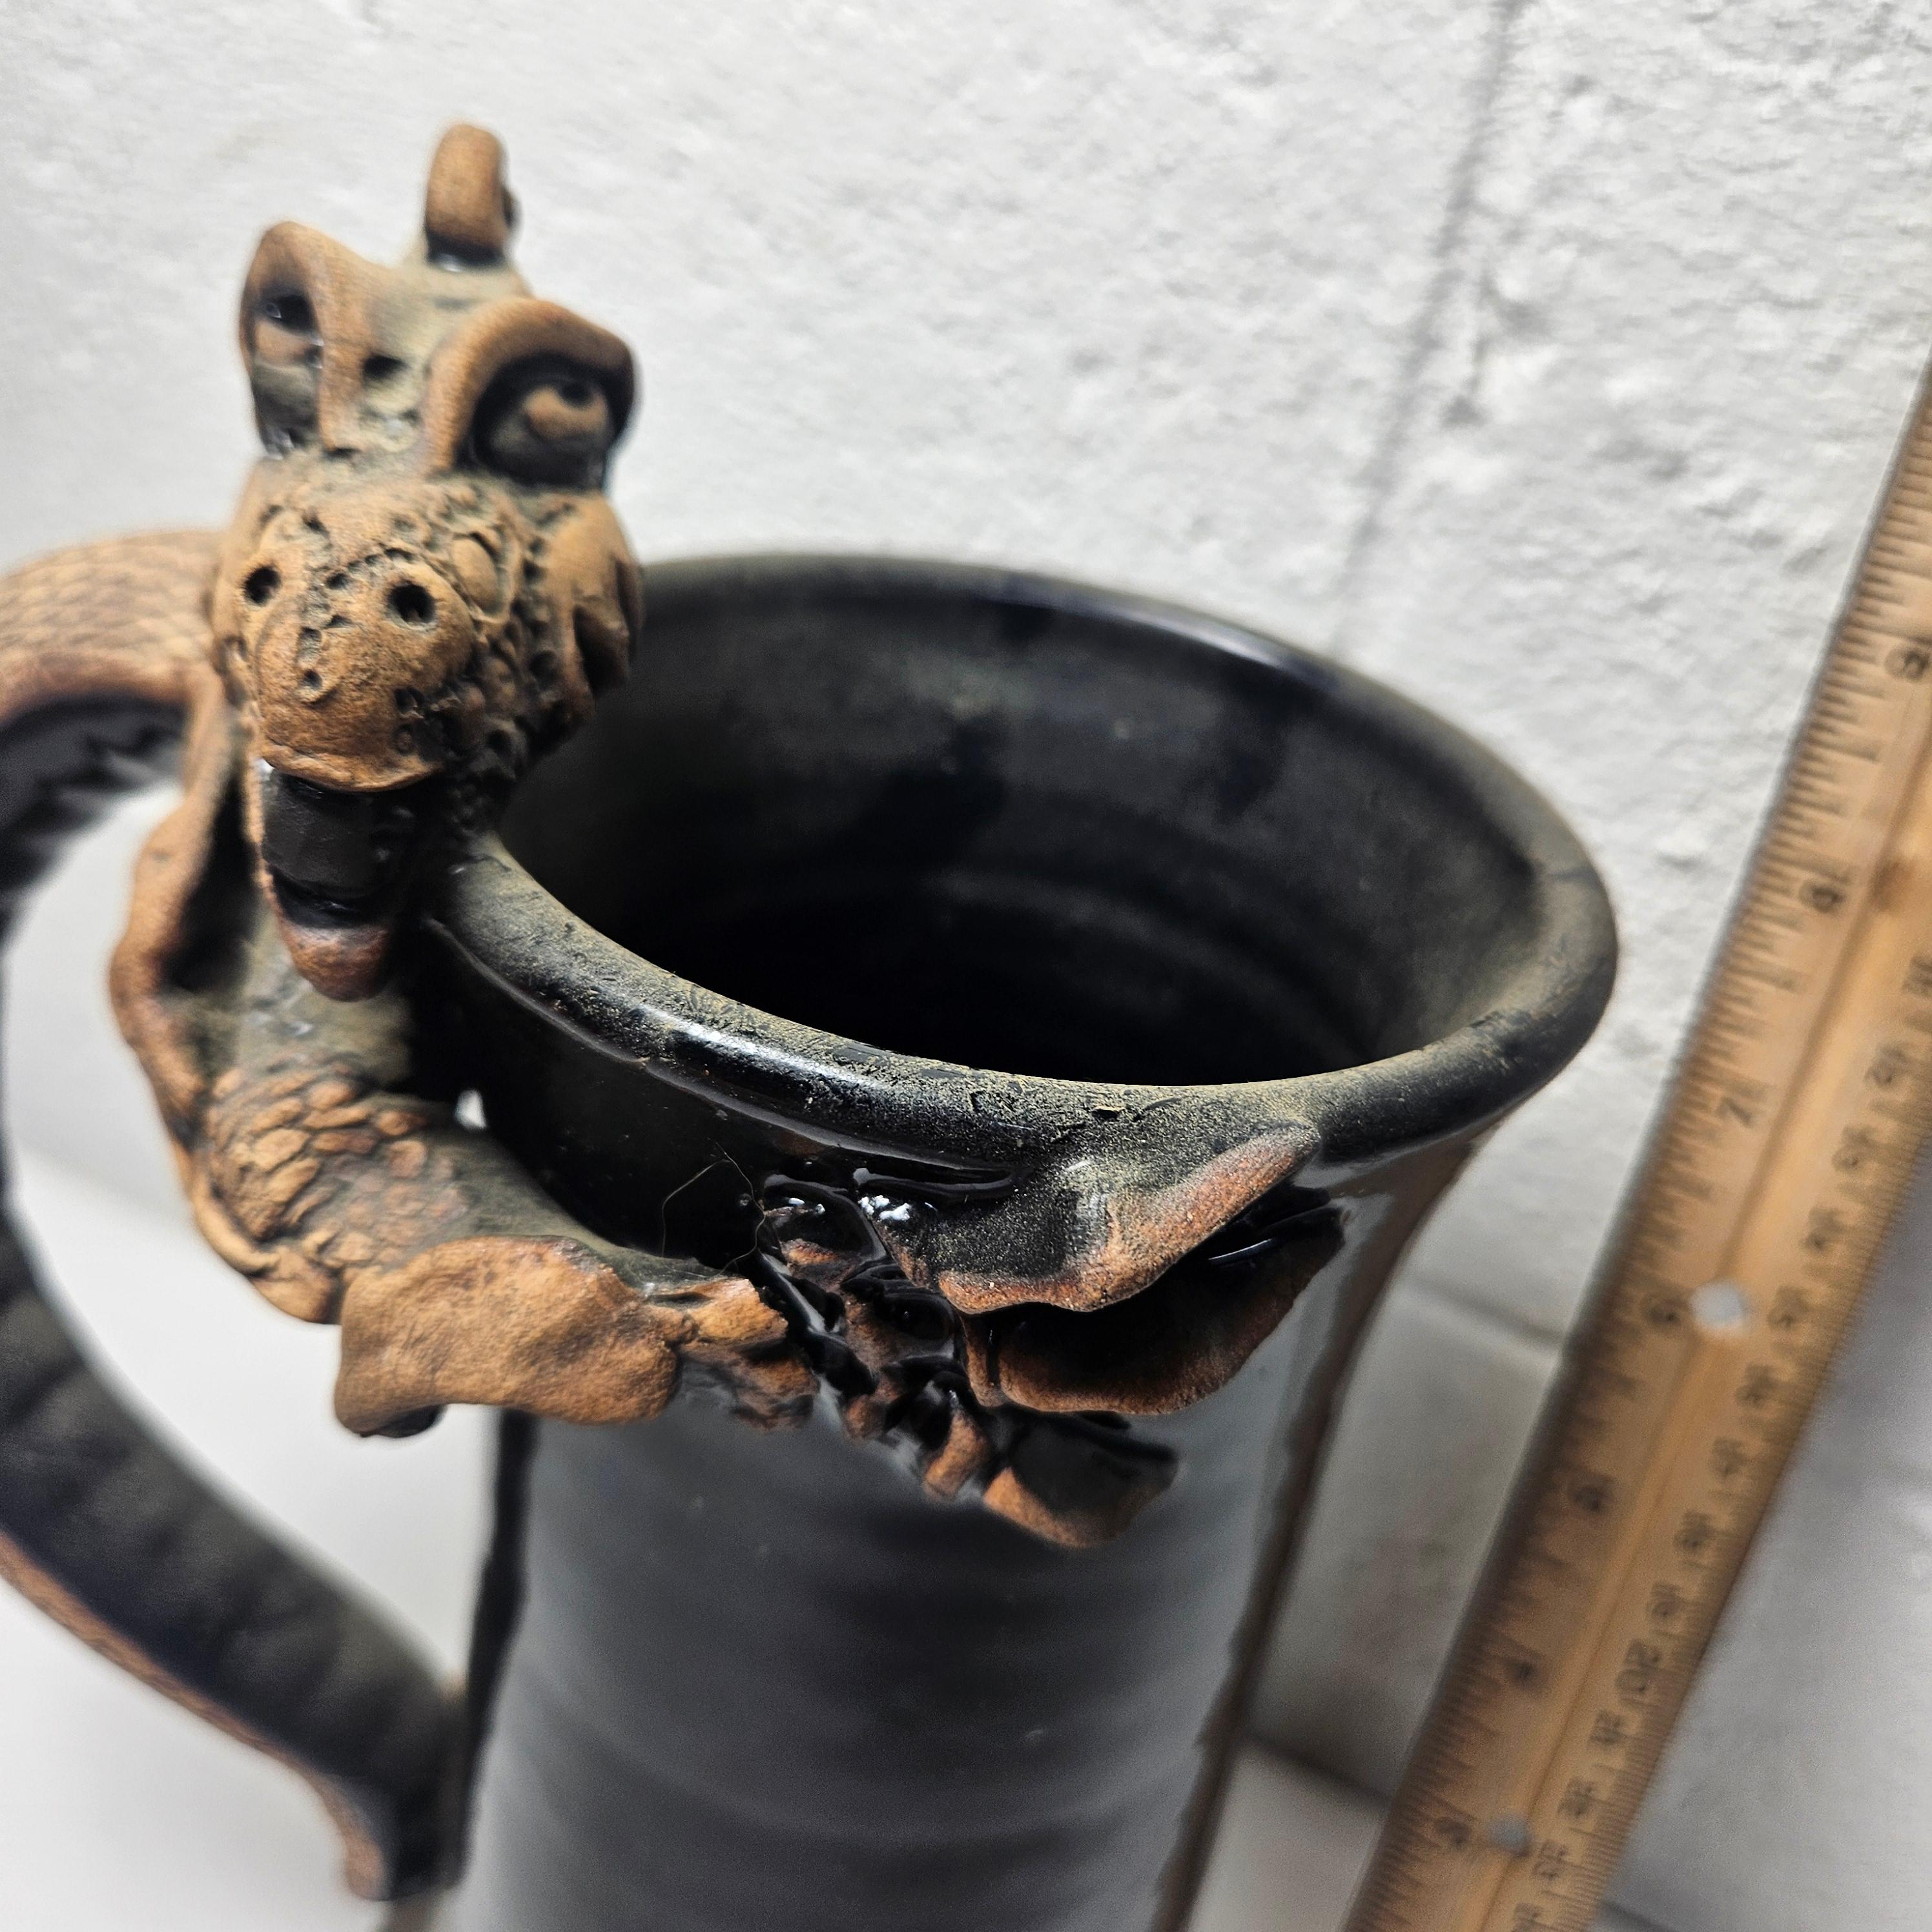 Signed Pottery Mug with Dragon Handle